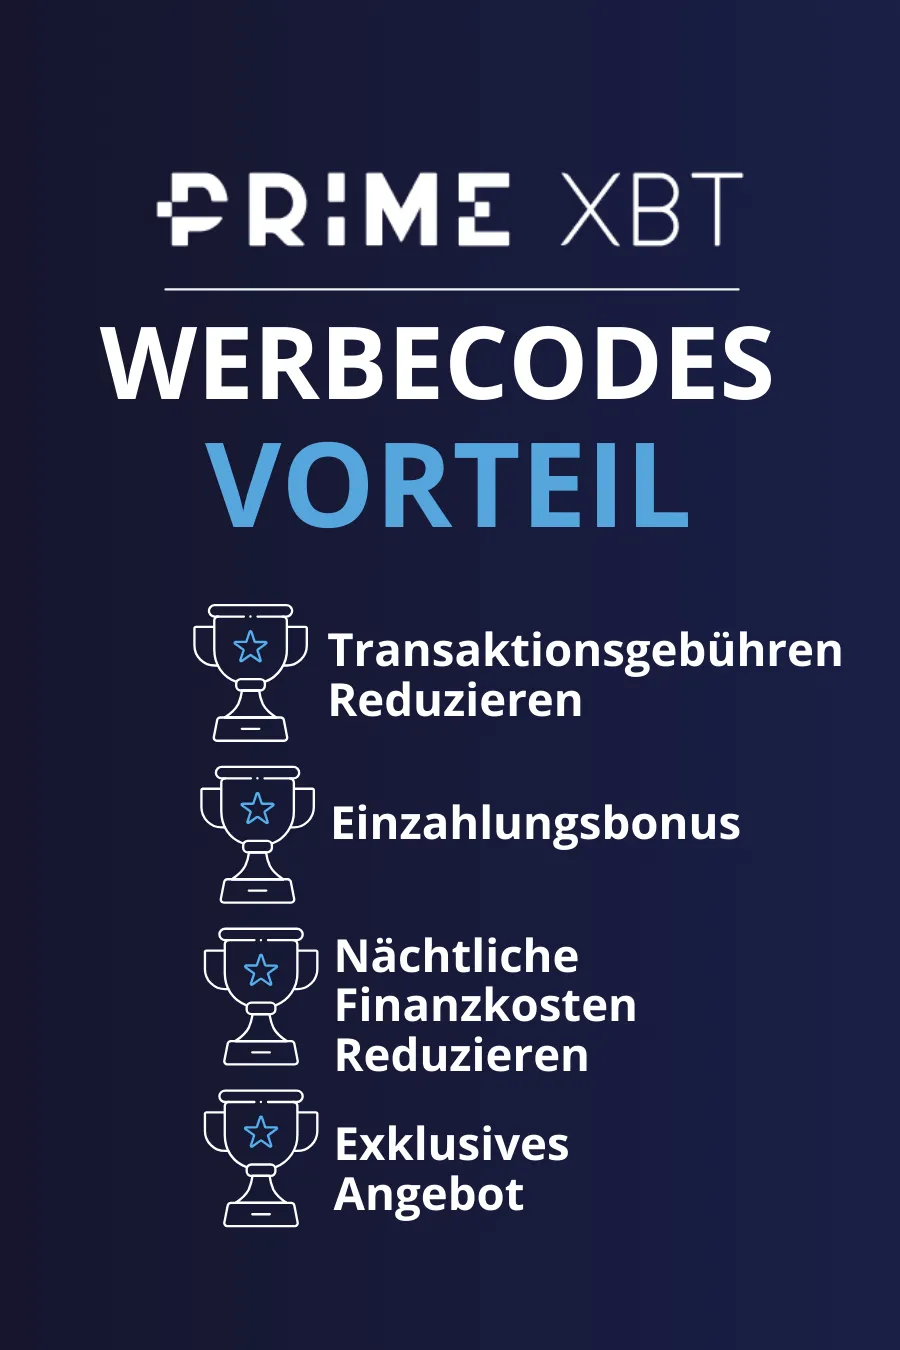 Hauptvorteile von PrimeXBT Promo-Codes.